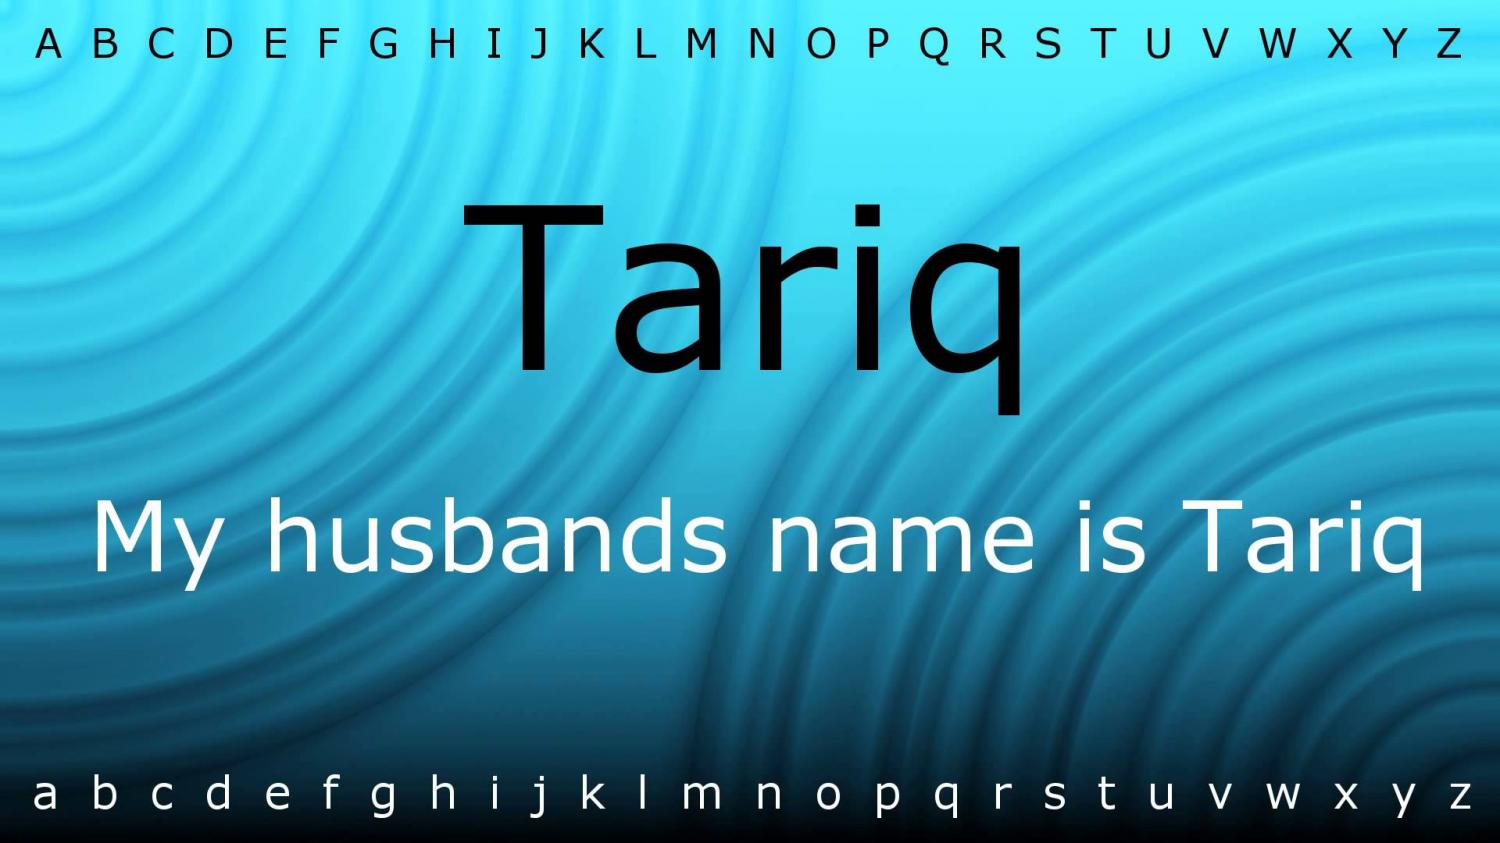 اسم طارق بالانجليزي عندما يكتب اسم طارق باللغة الانجليزية يكون اجمل اروع روعه